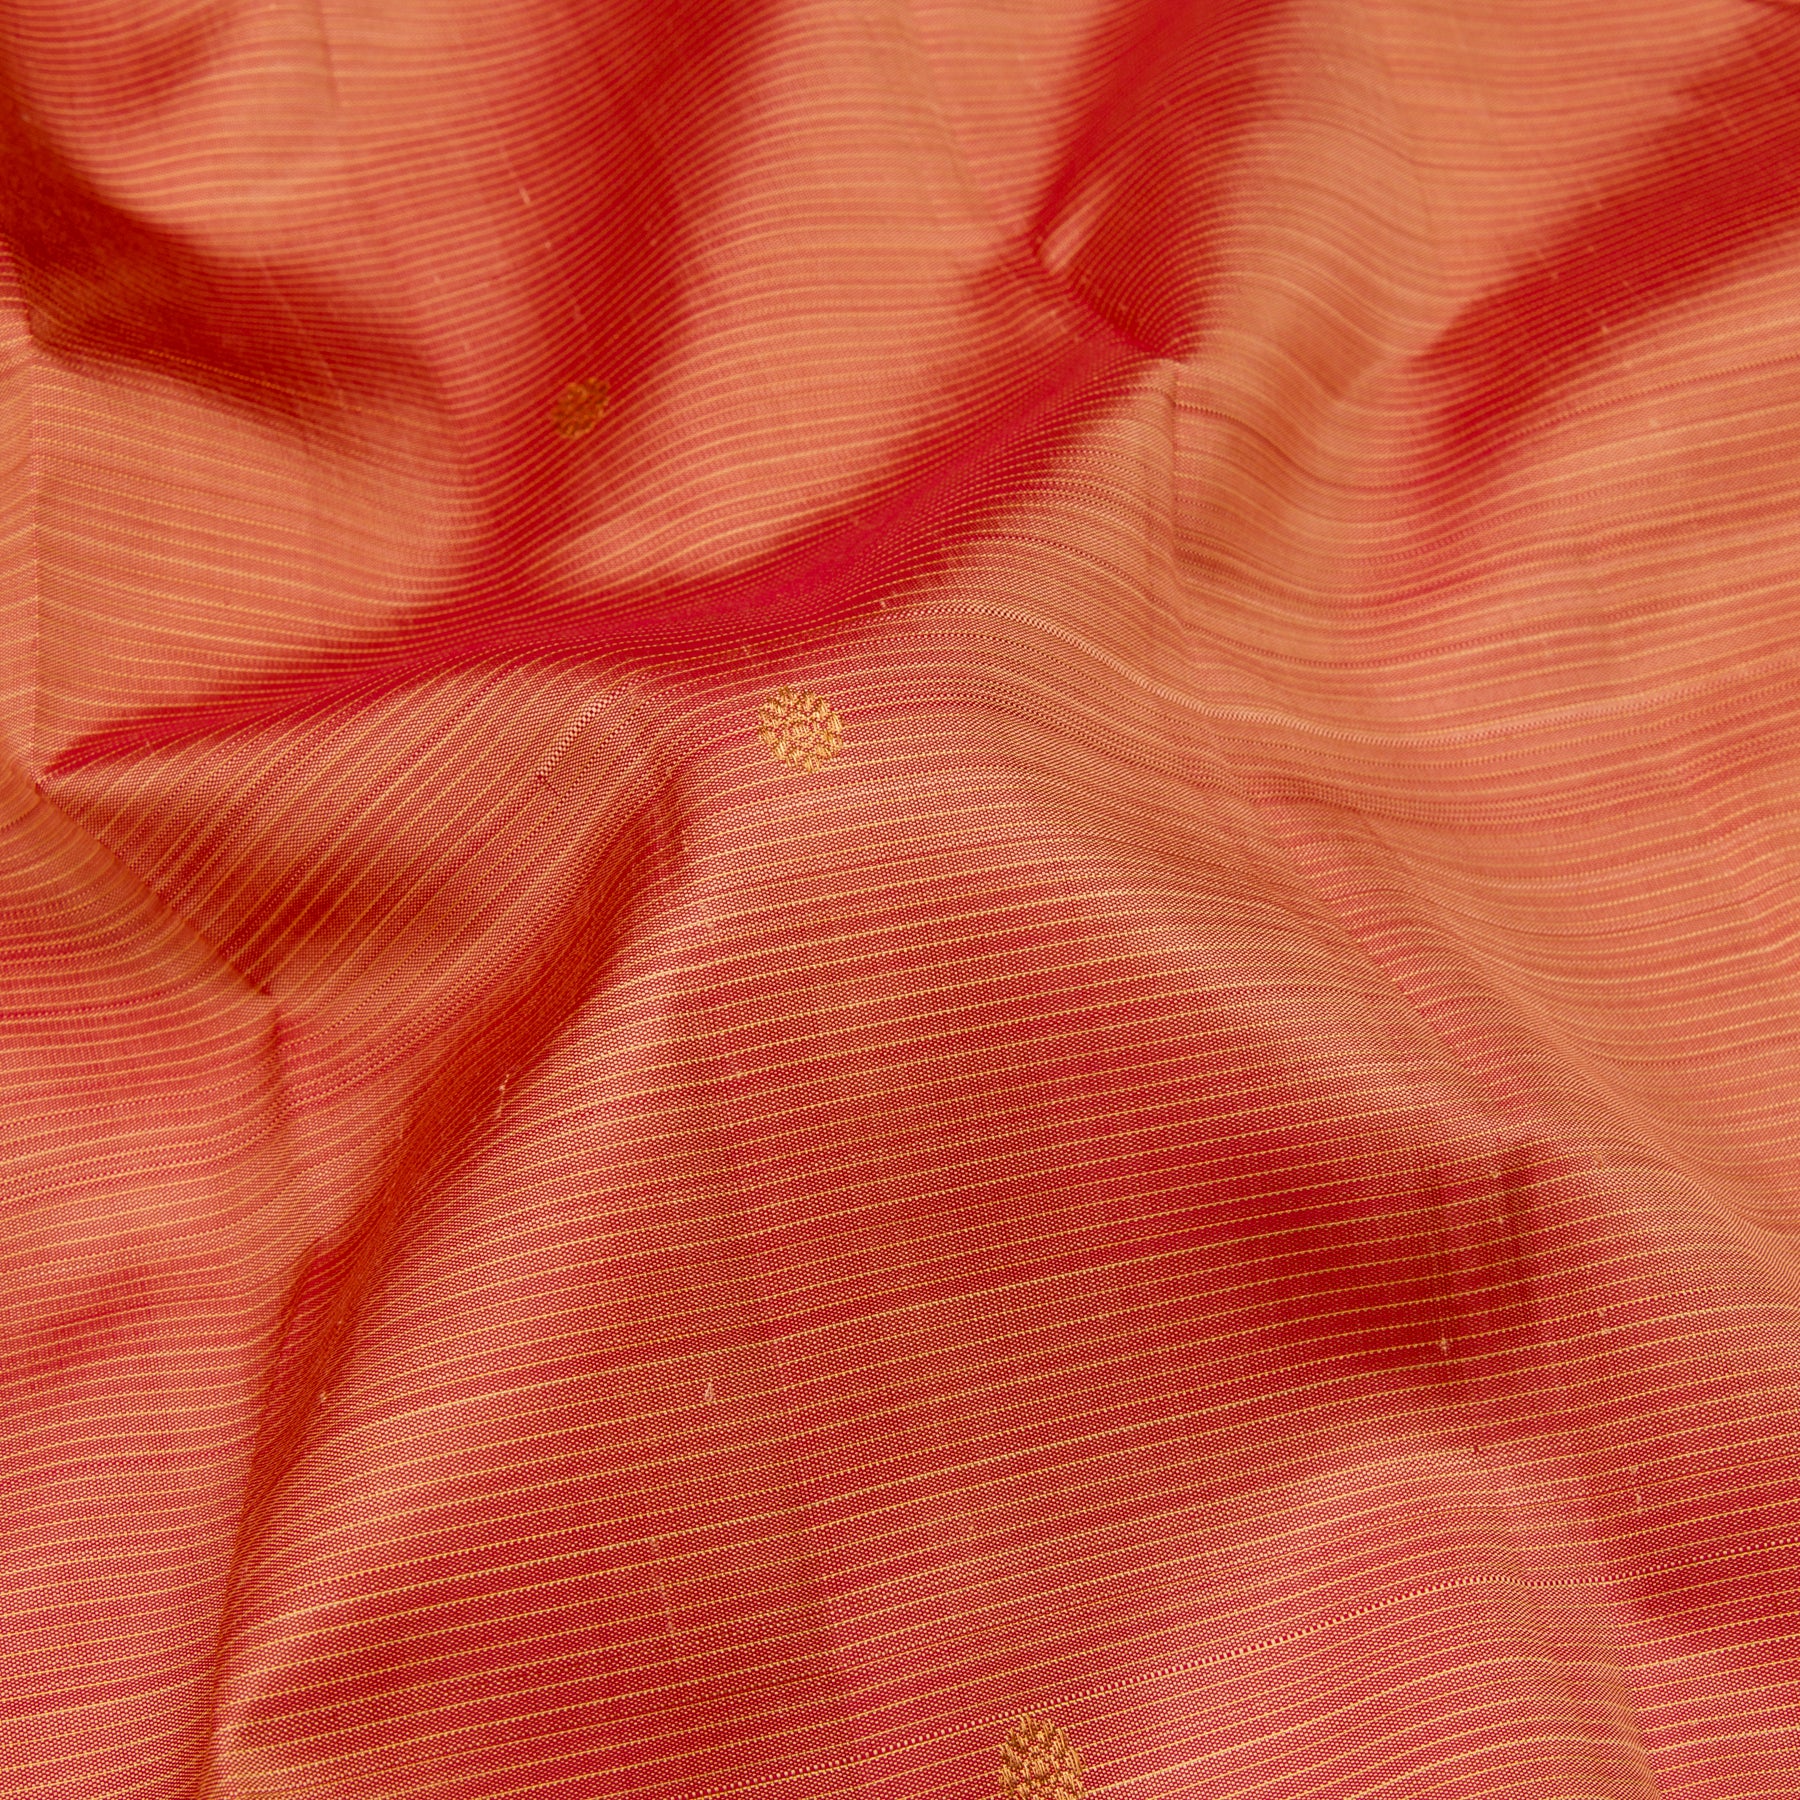 Kanakavalli Kanjivaram Silk Sari 23-599-HS001-12351 - Fabric View